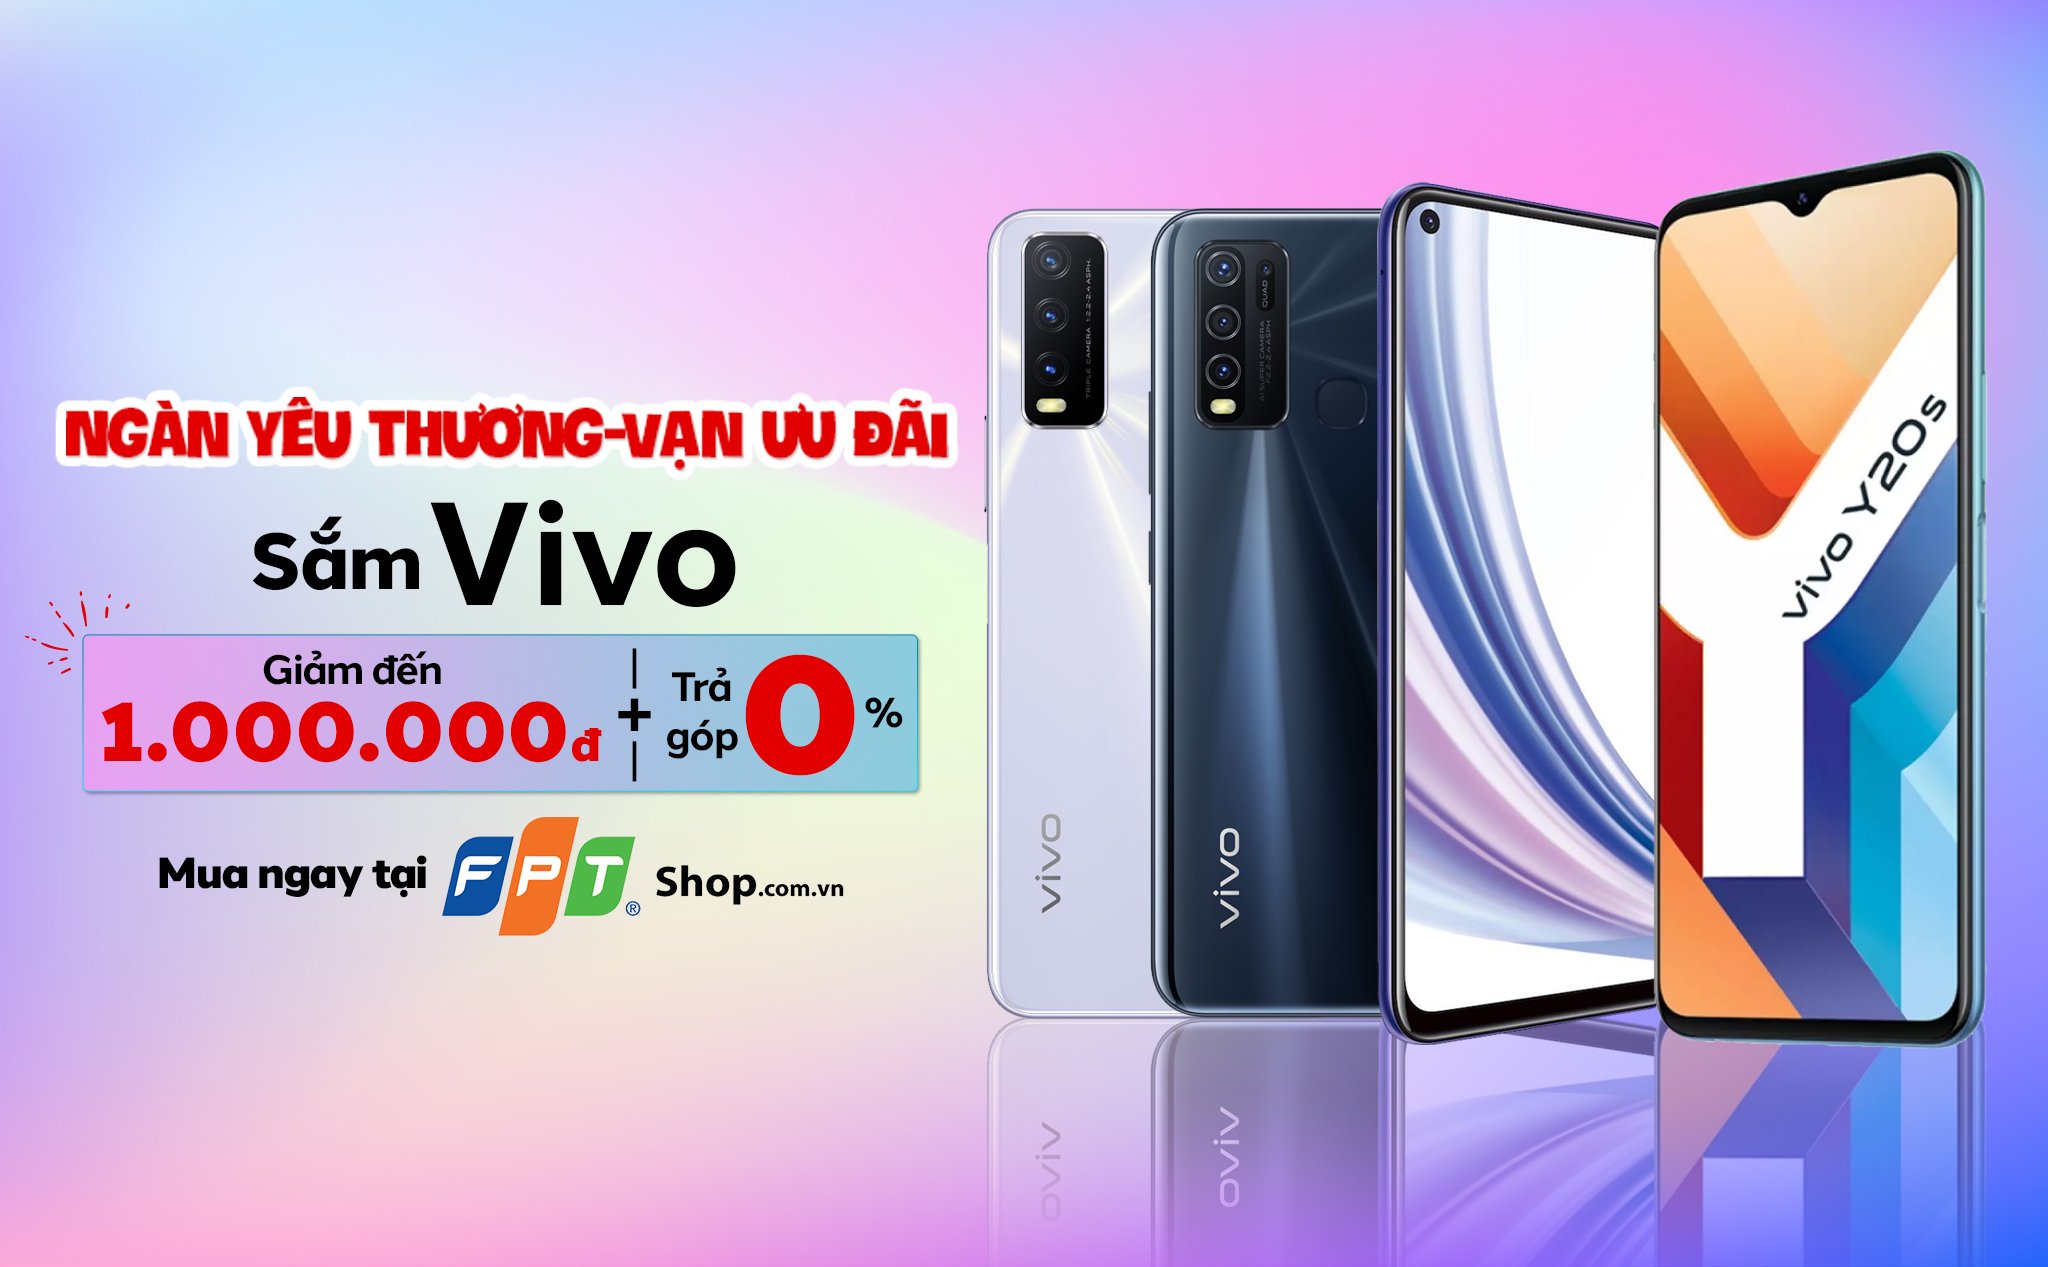 [QC] Điện thoại Vivo đang giảm sốc đến 1.000.000 đồng tại FPT Shop